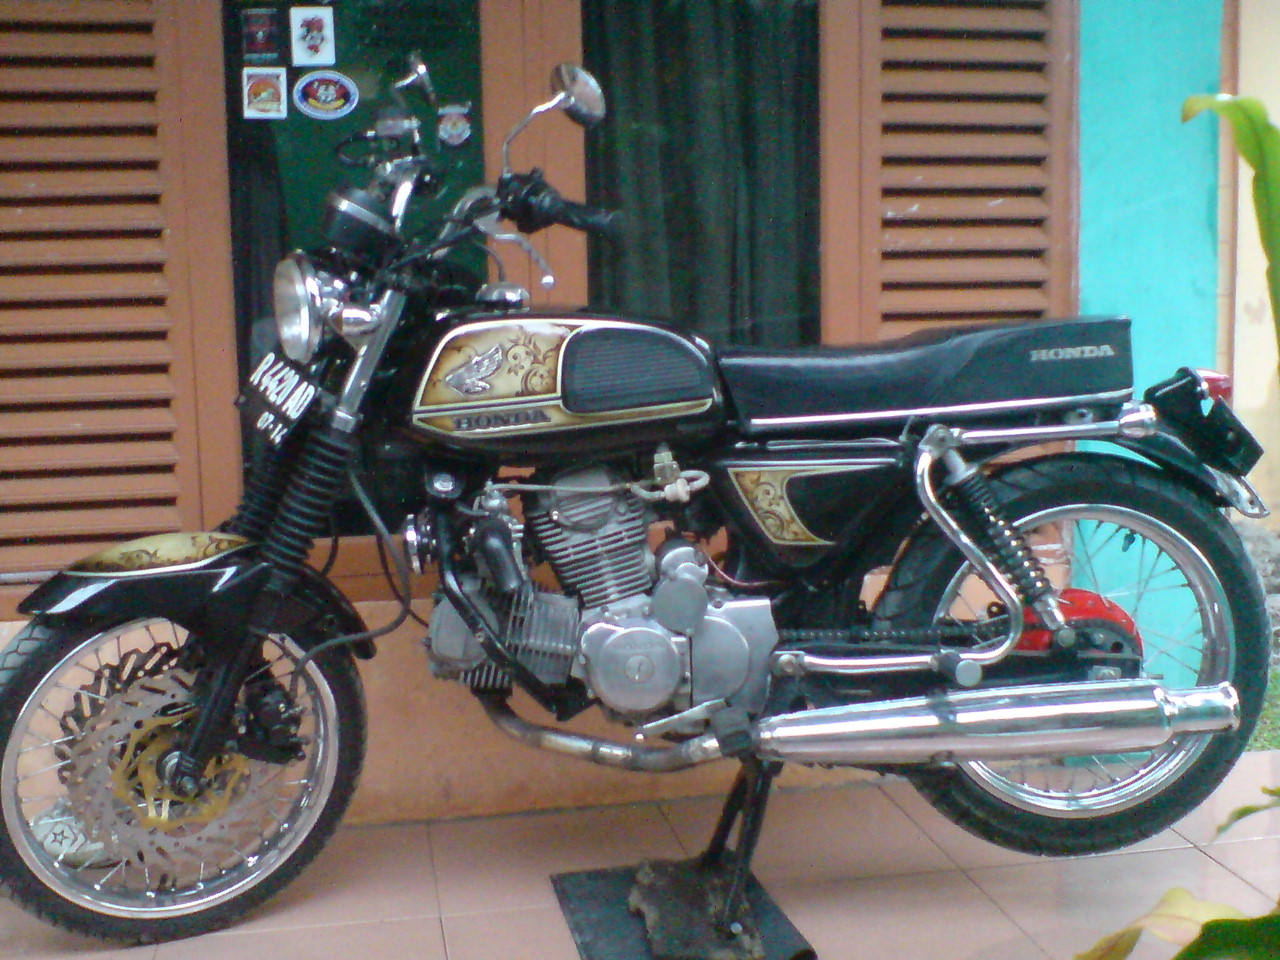 Pijar'CB Blogs: "Honda CB100 1975 Rebuild to V_Engine 400cc"